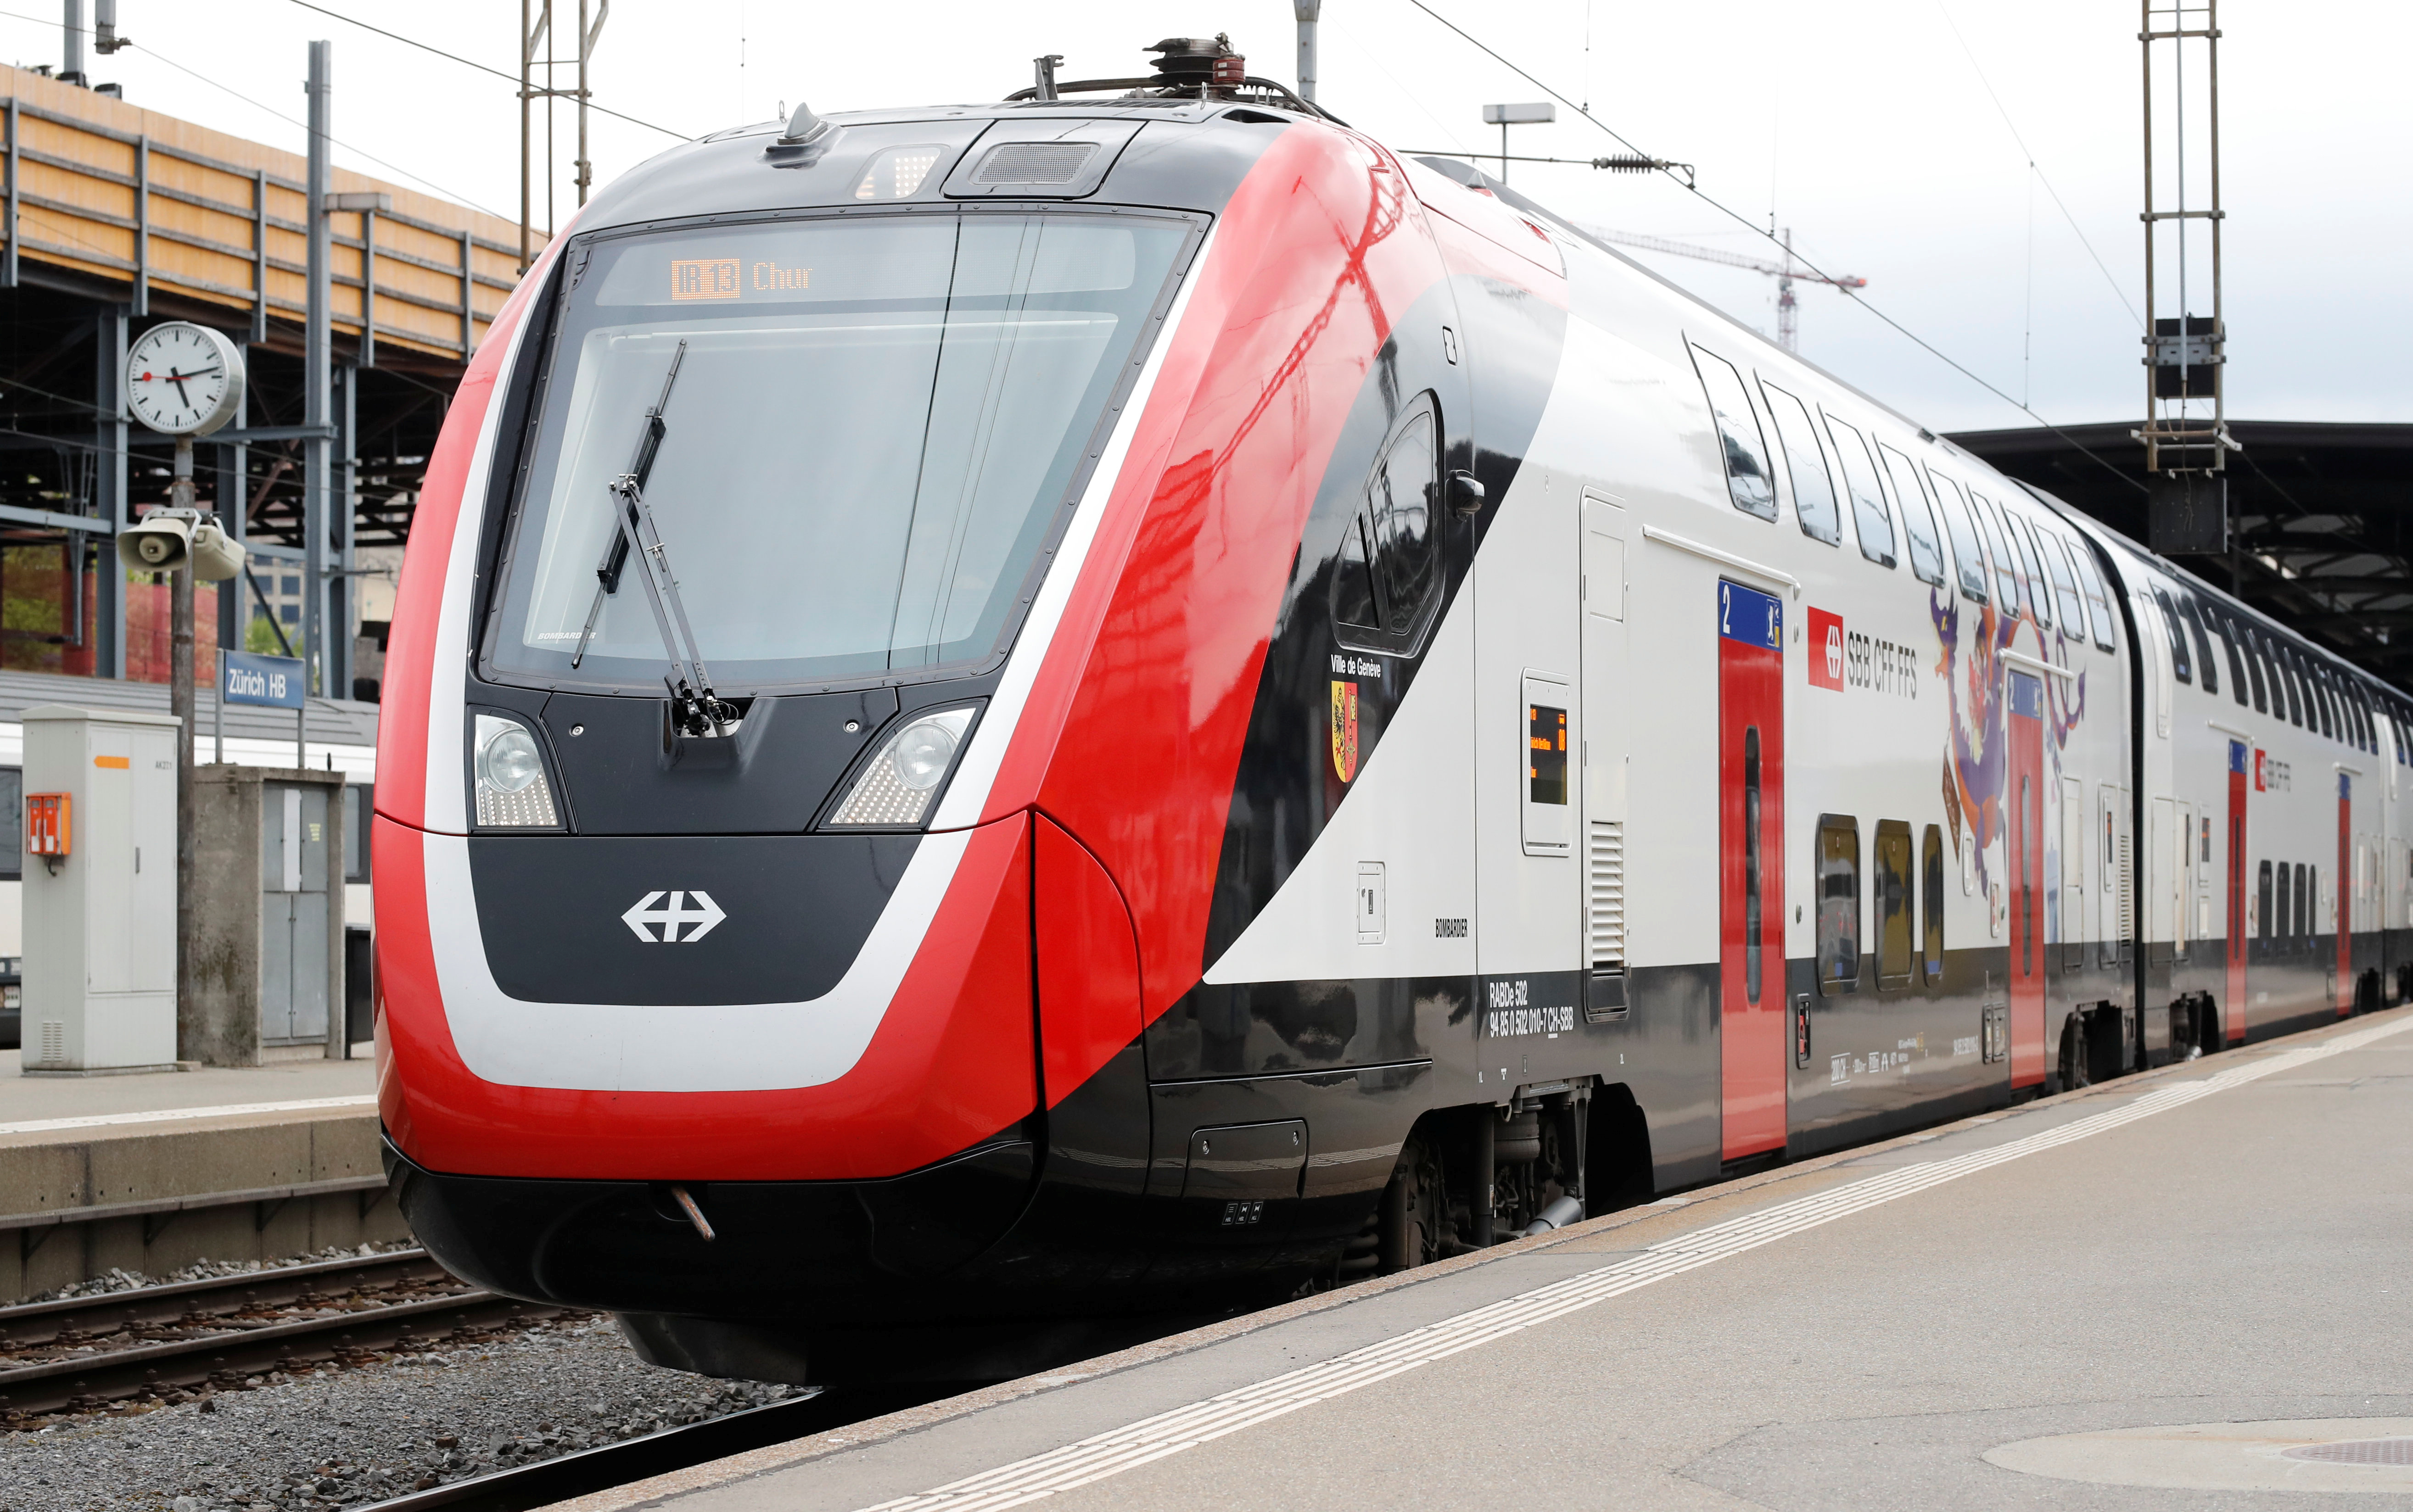 Alstom va faire une offre pour racheter le ferroviaire de Bombardier: autour de 7 milliards de dollars